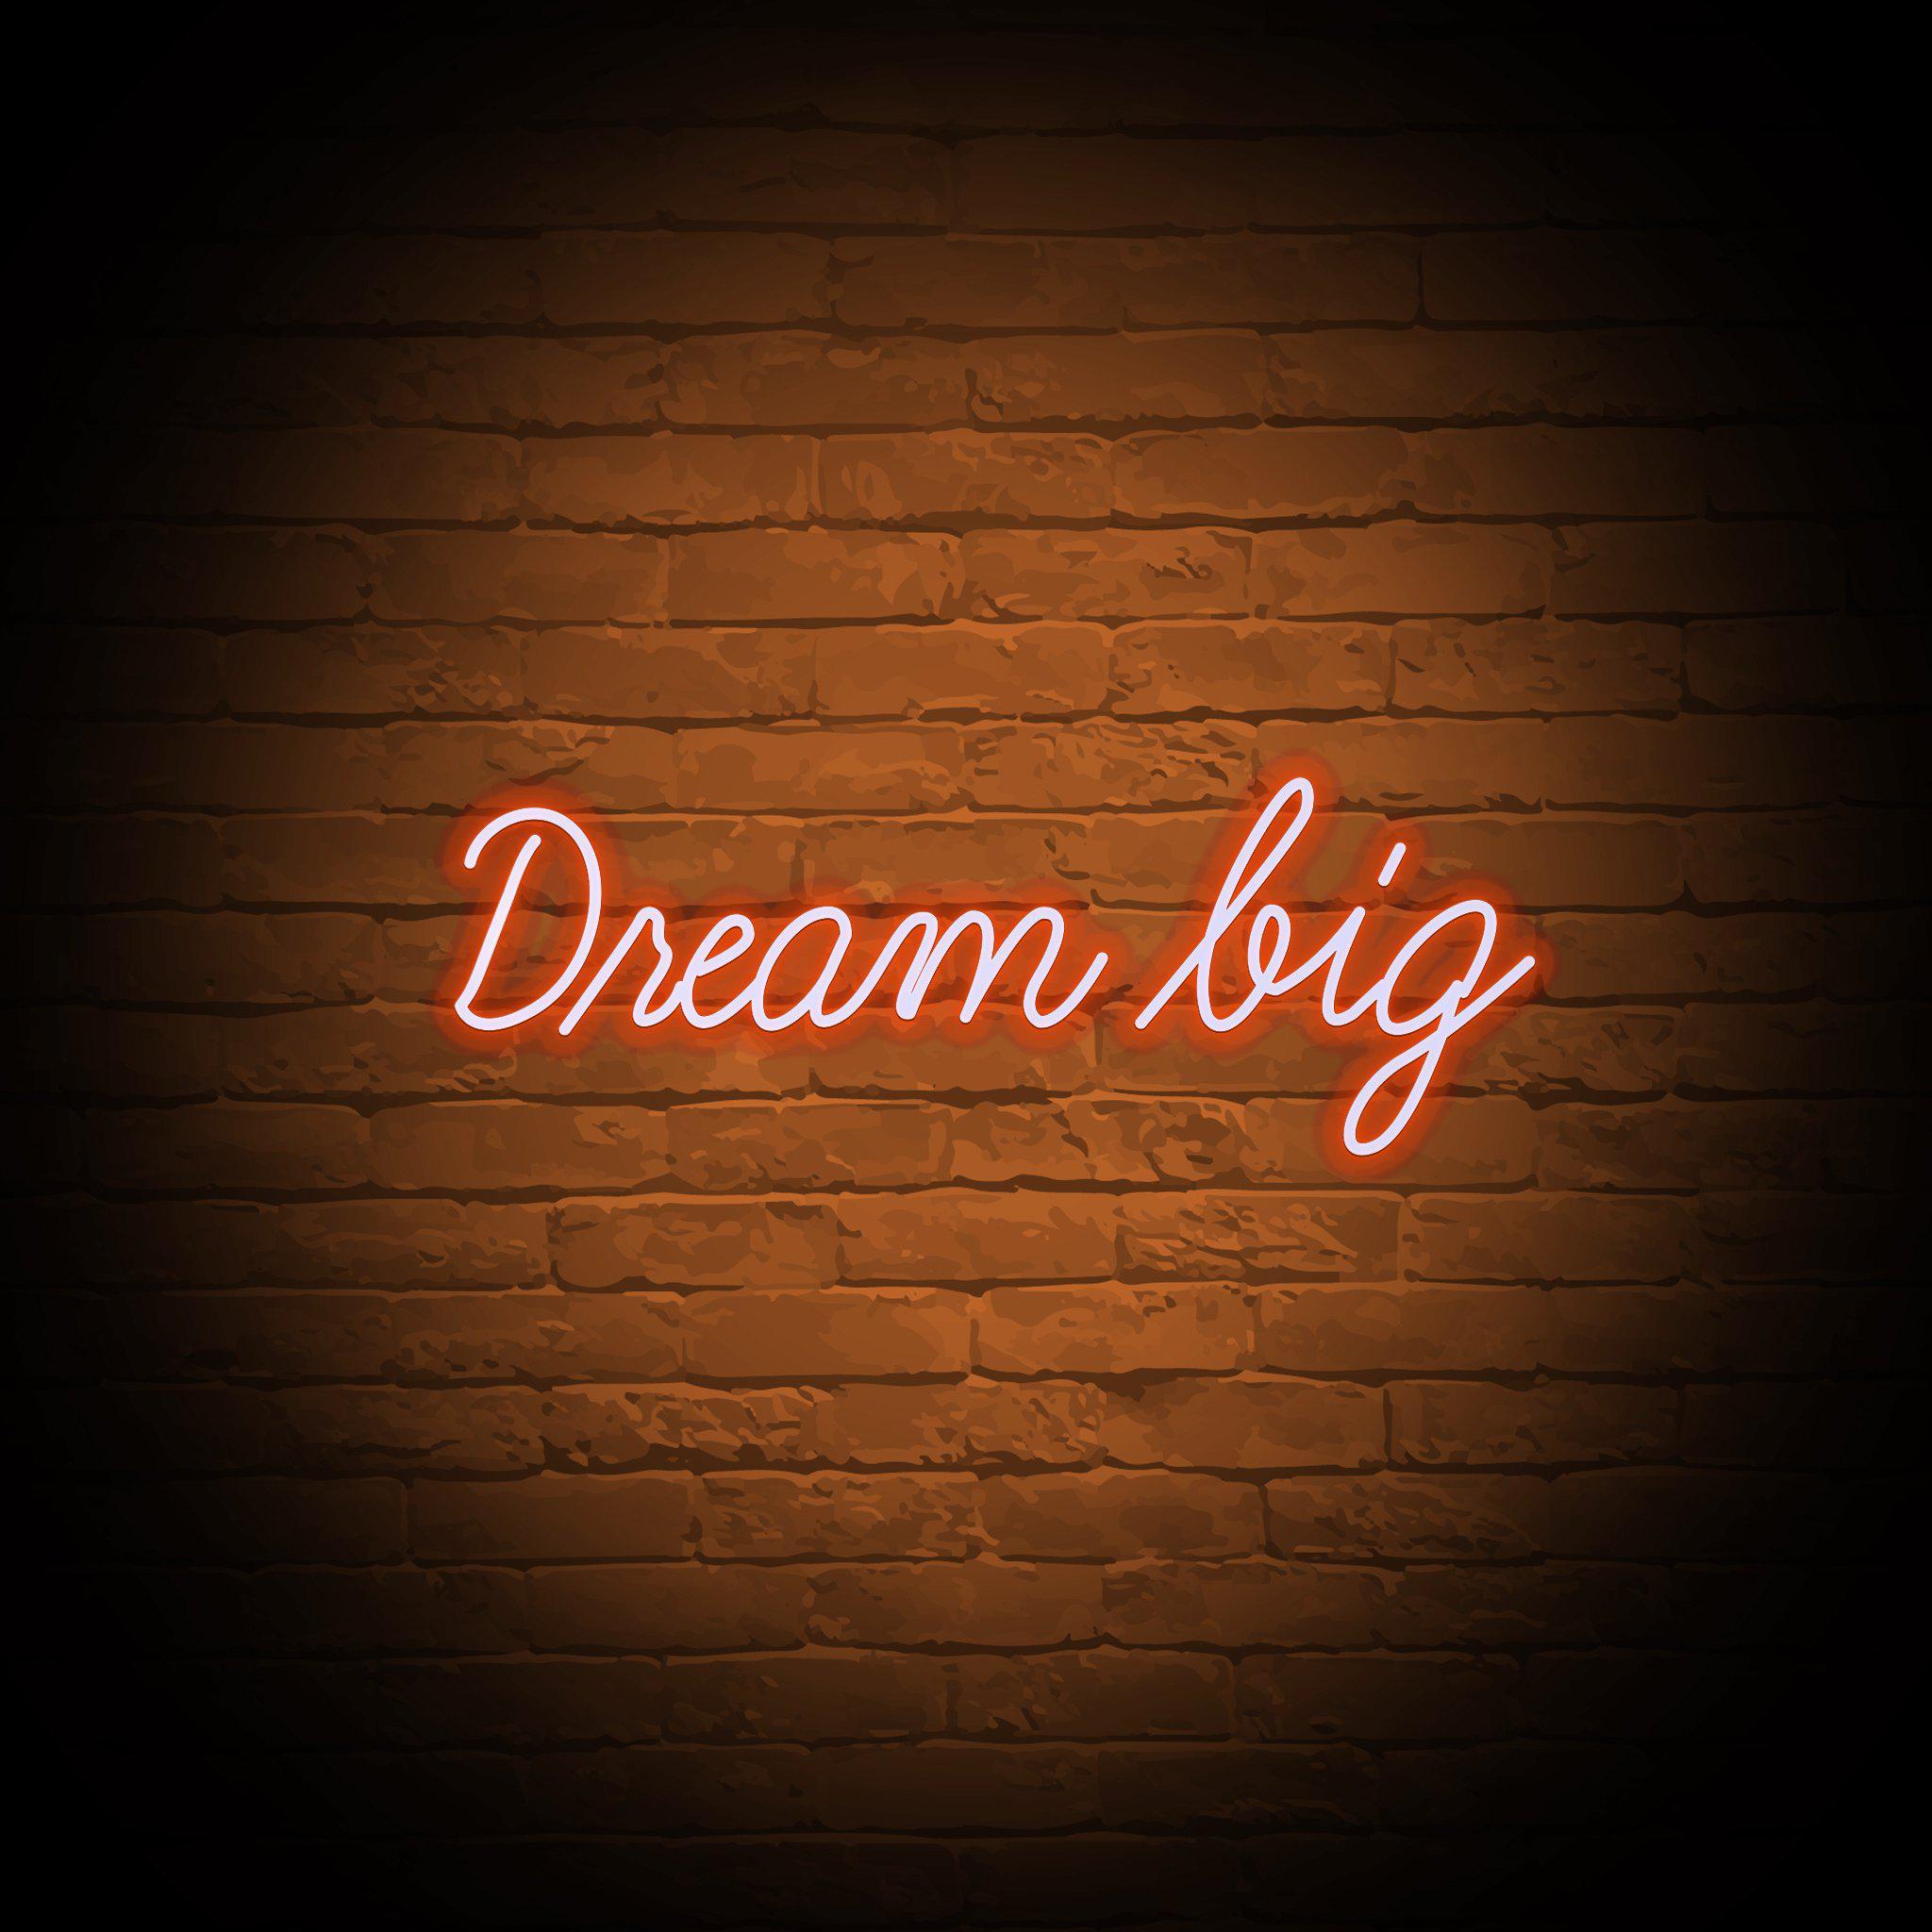 'DREAM BIG' NEON SIGN - NeonFerry